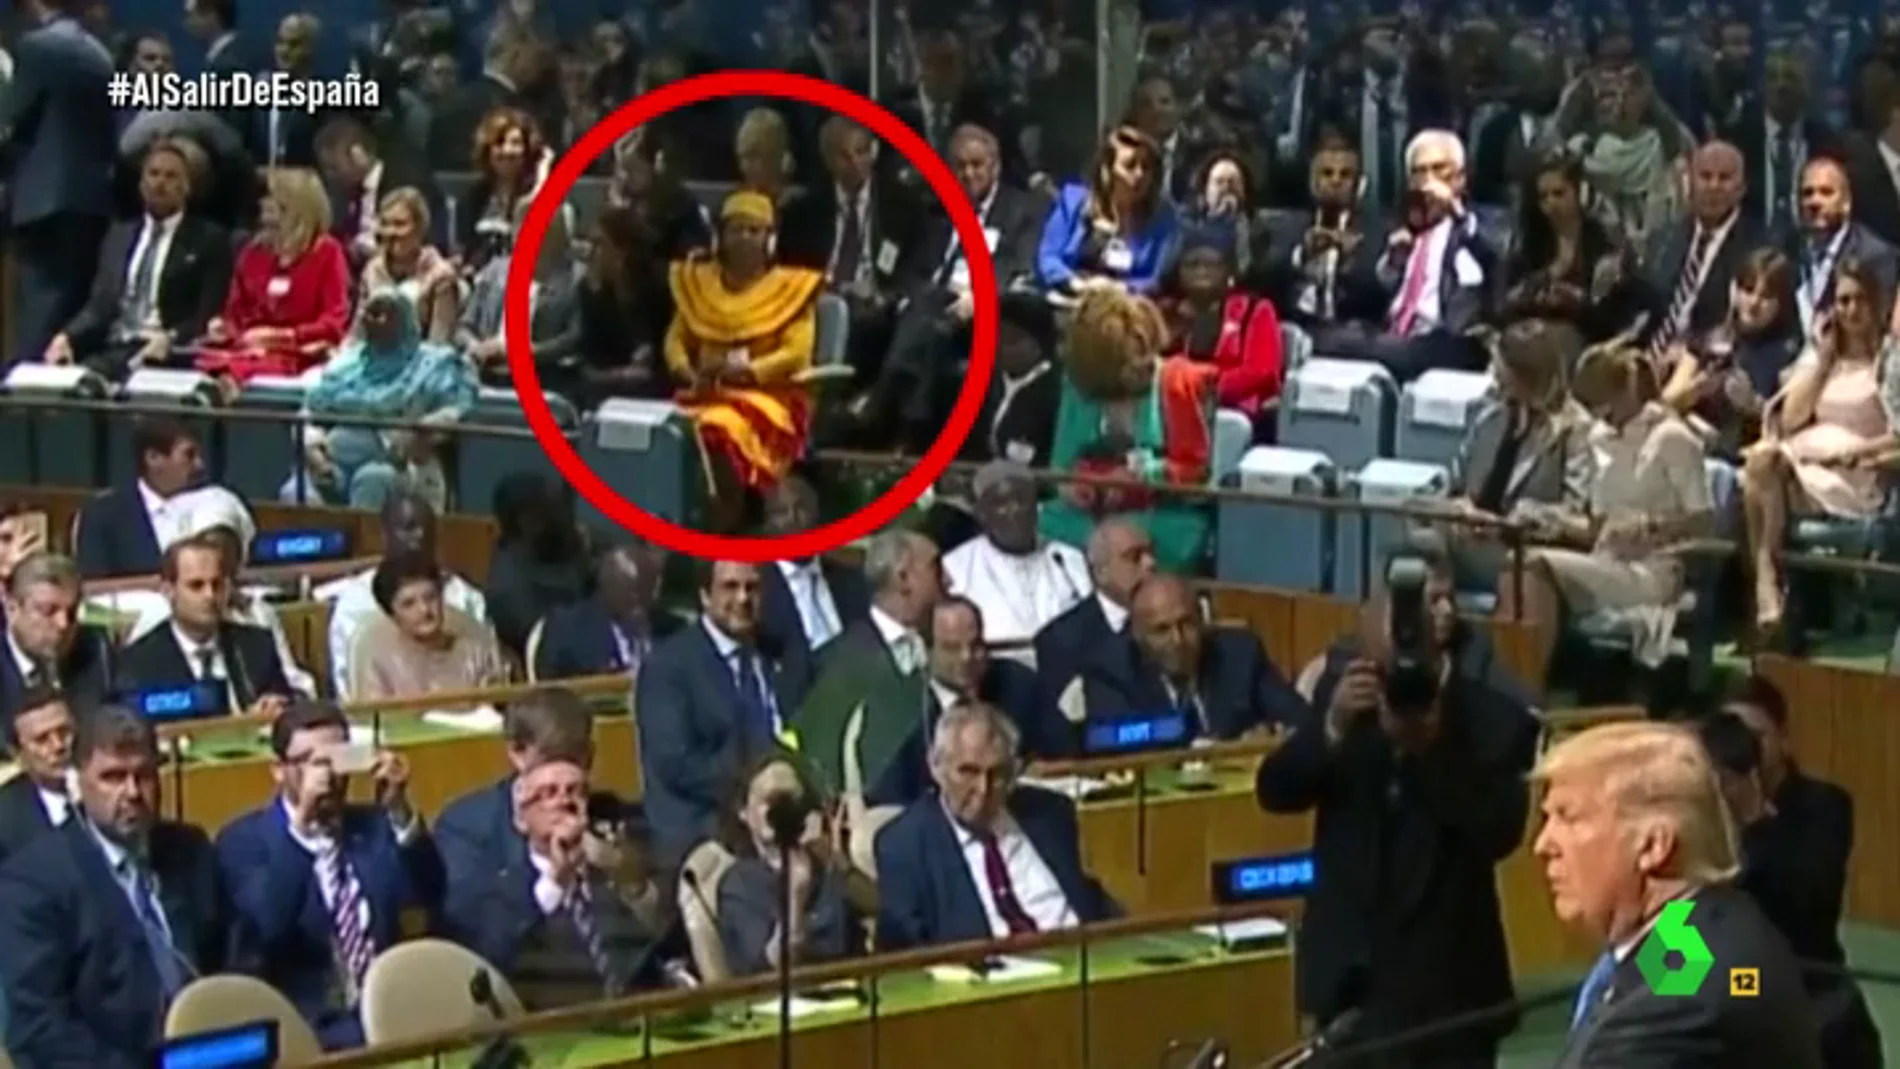 Wyoming destapa la "traición" de Cataluña en la Asamblea de la ONU: "Una mujer vestida de senyera, ¡eso es 'product placement'!"